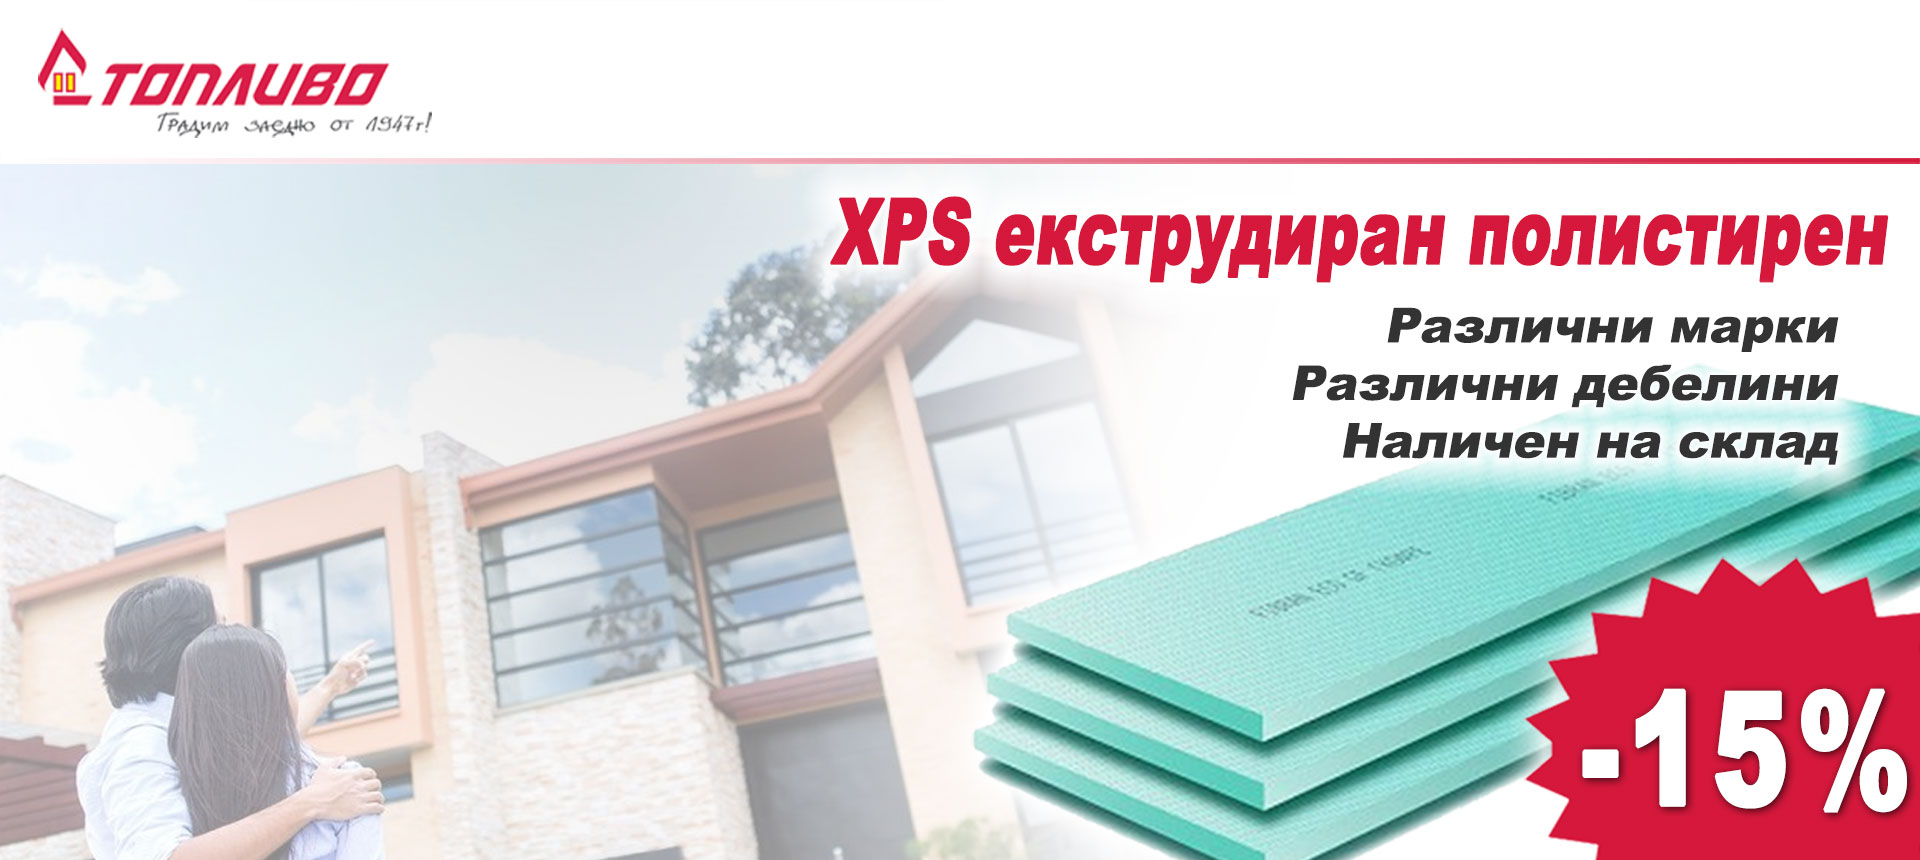 XPS екструдиран полистирен с 15% отстъпка